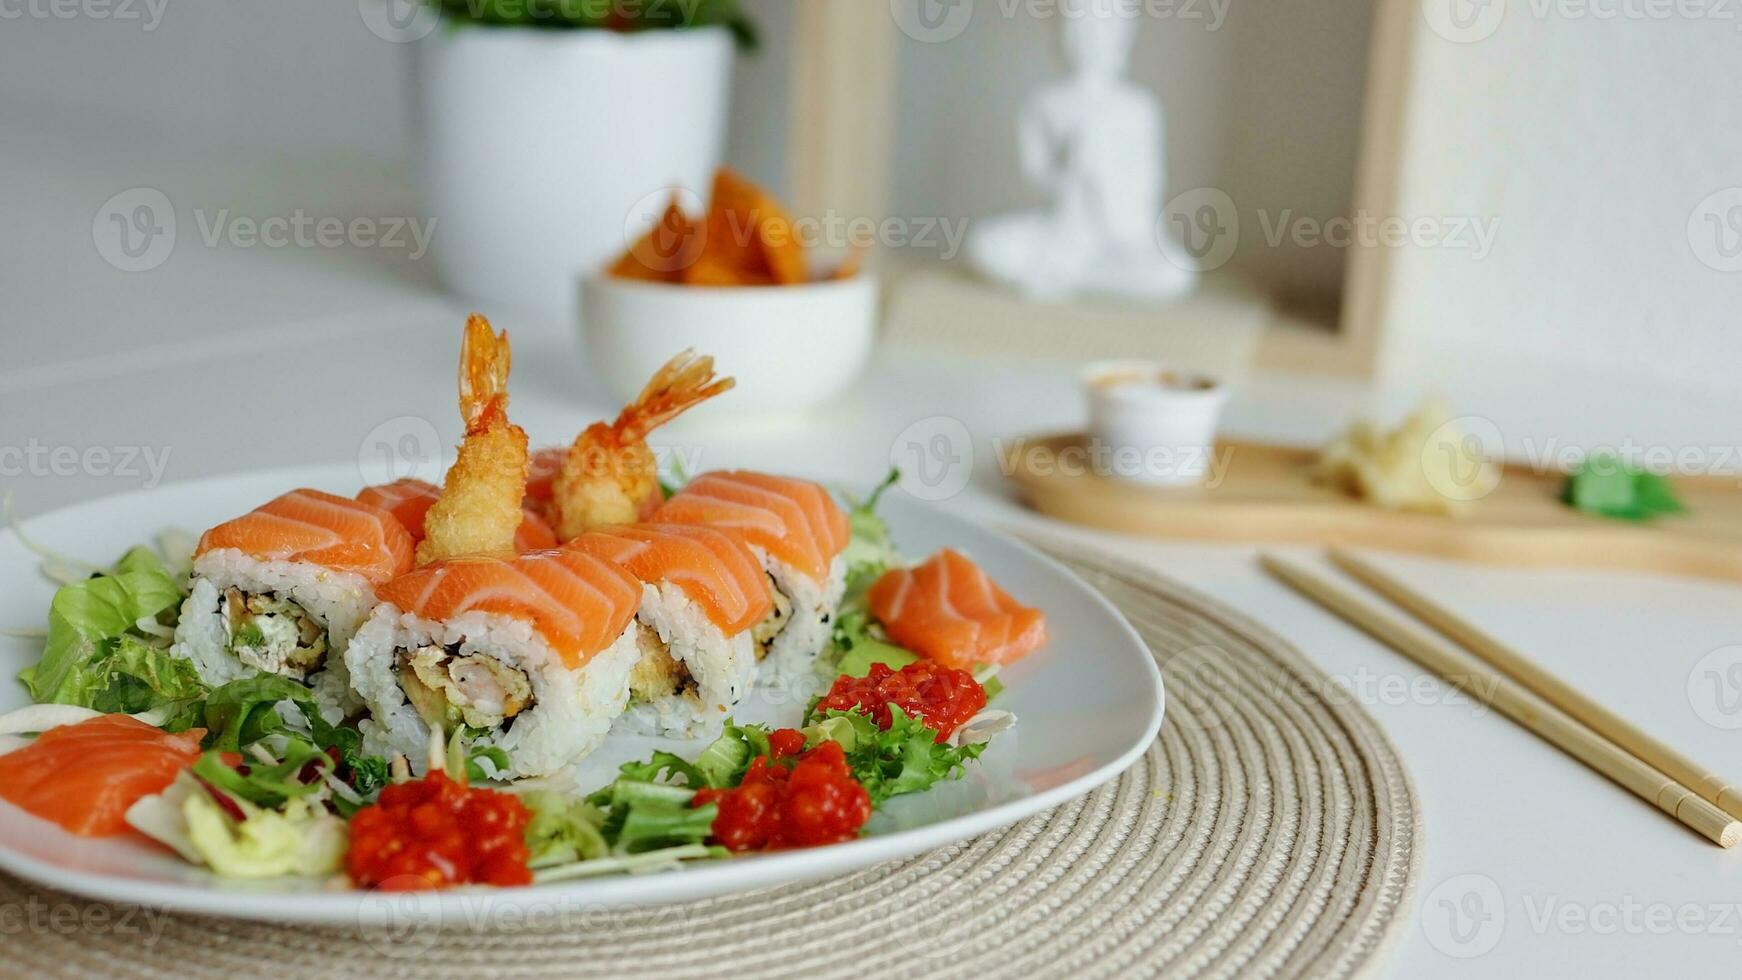 aérien Japonais Sushi aliments. maki ets Rouleaux avec saumon, crevette, Crabe et Avocat. Haut vue de assorti Sushi, tout vous pouvez manger menu. arc en ciel Sushi rouleau, uramaki, hosomaki et nigiri. photo